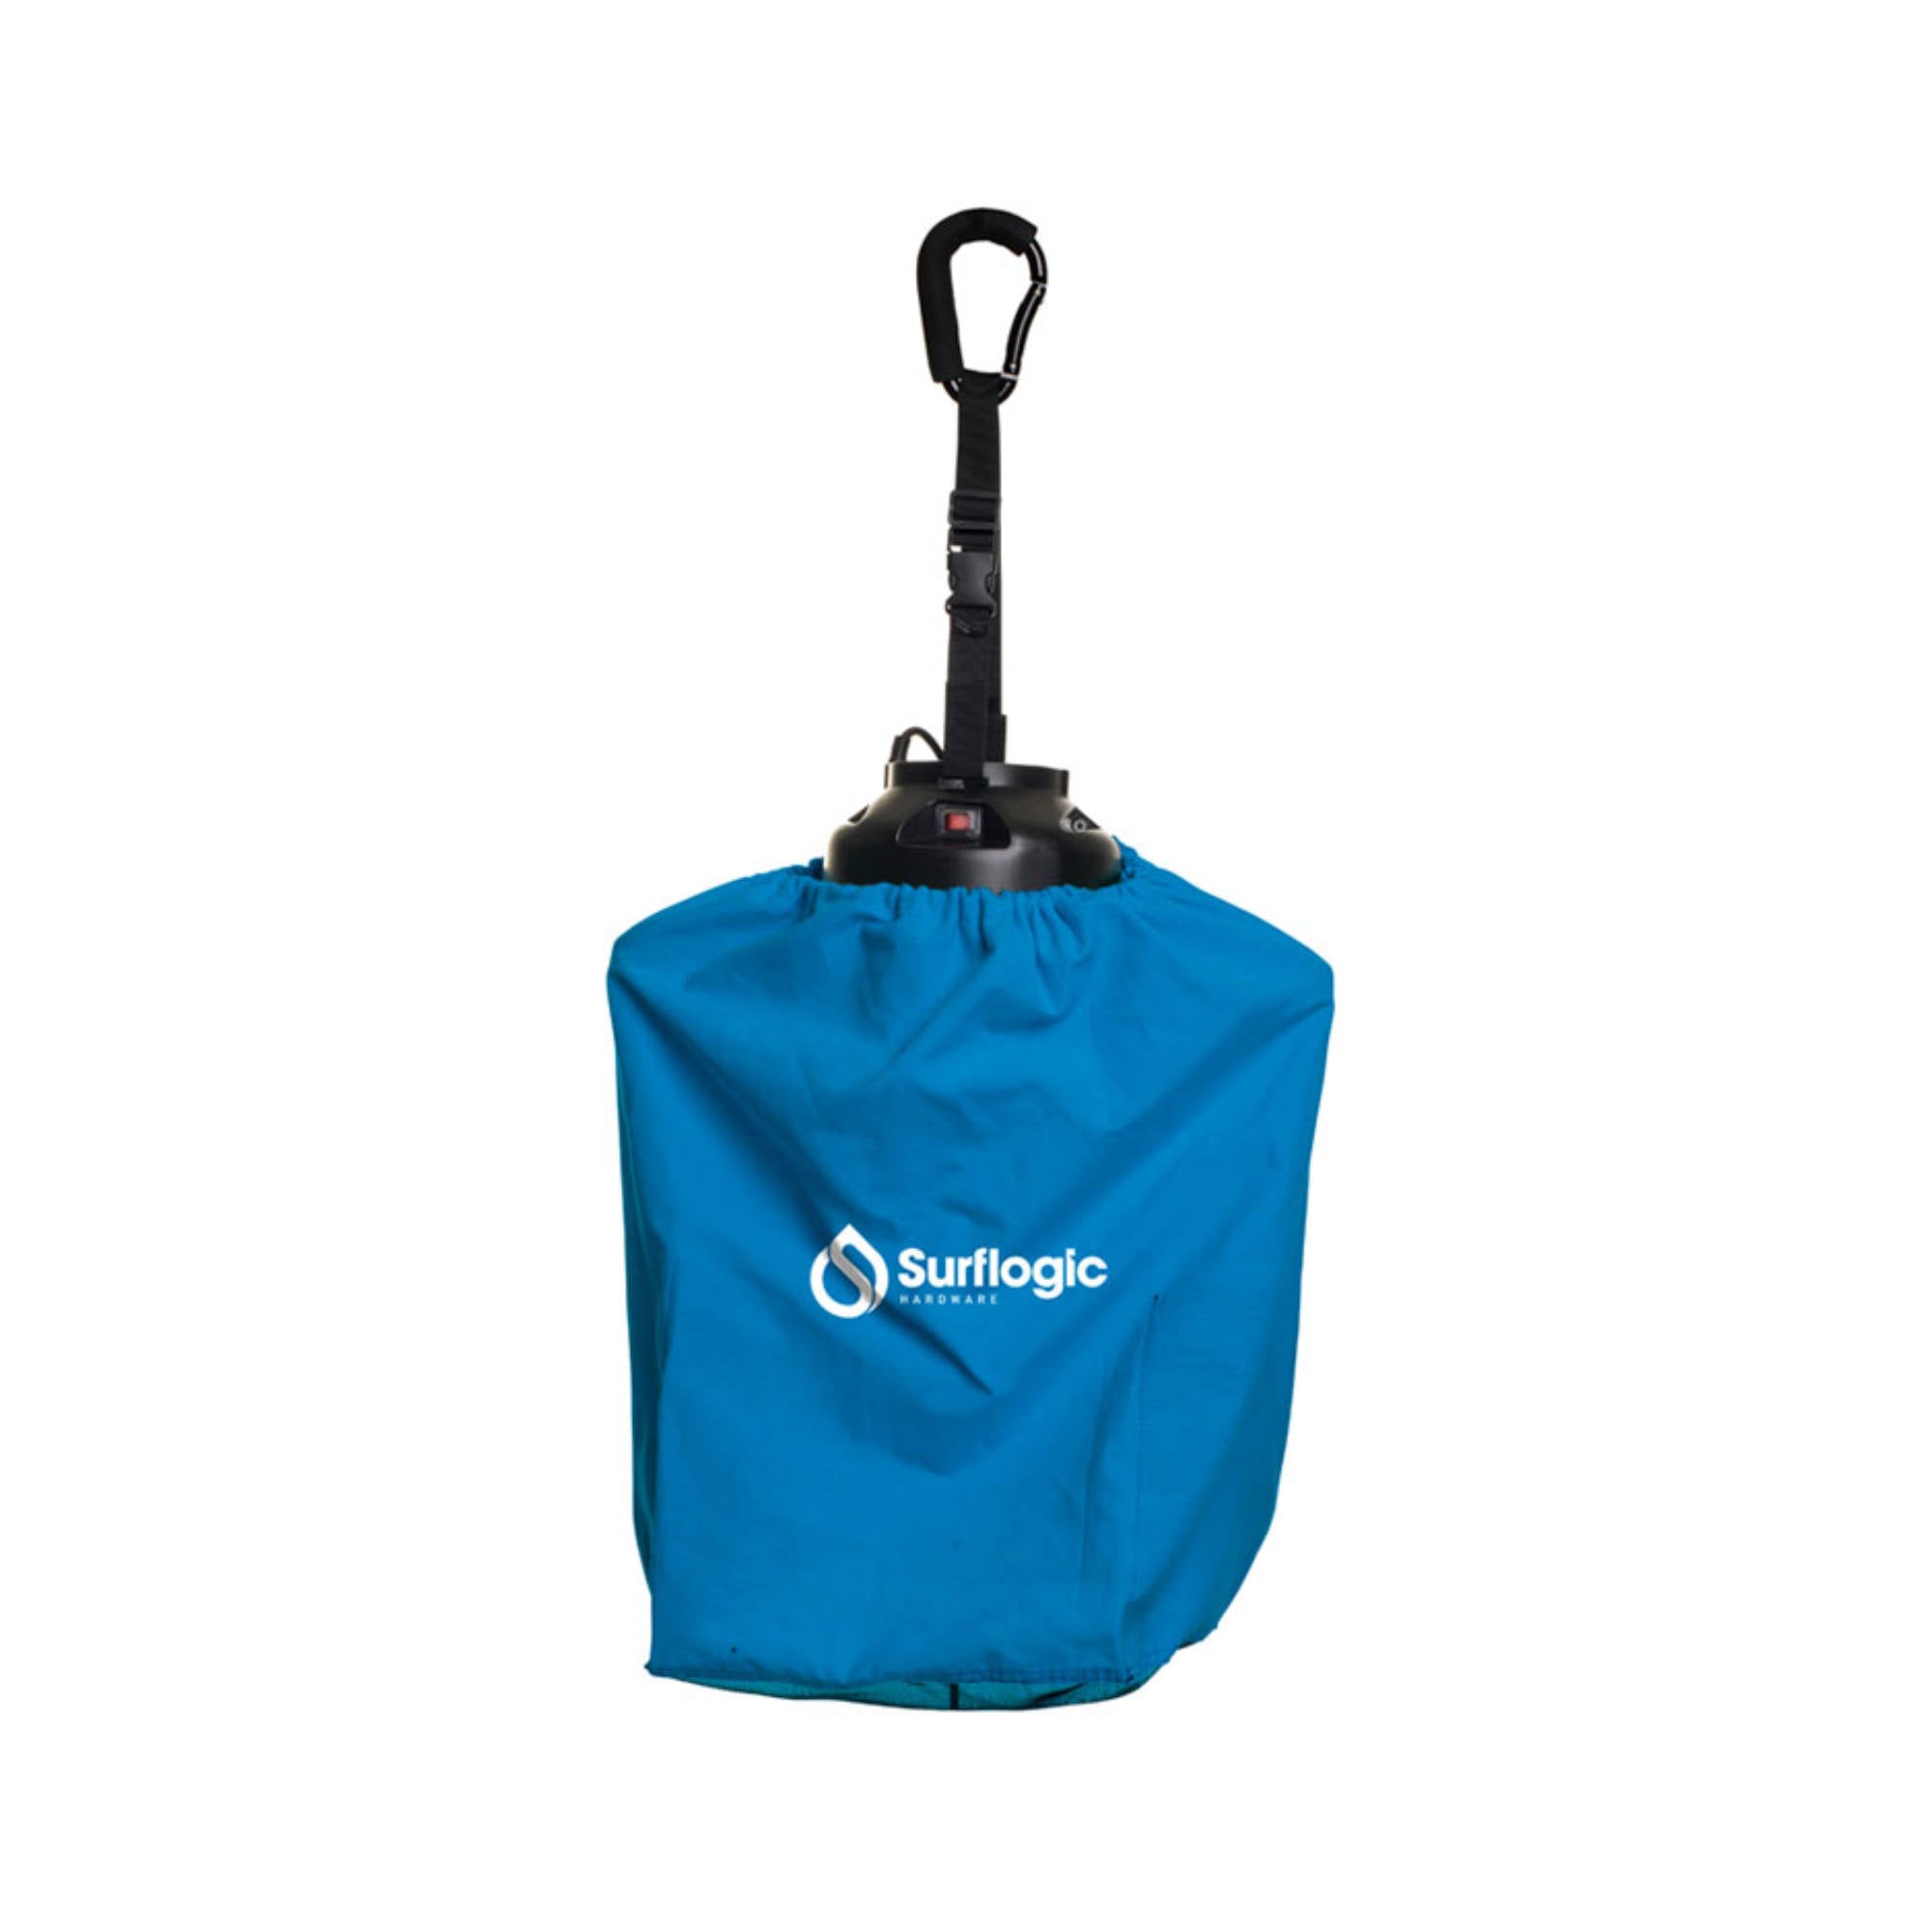 Surf Logic Accessories Bag - für Handschuhe, Surfschuhe und Haube